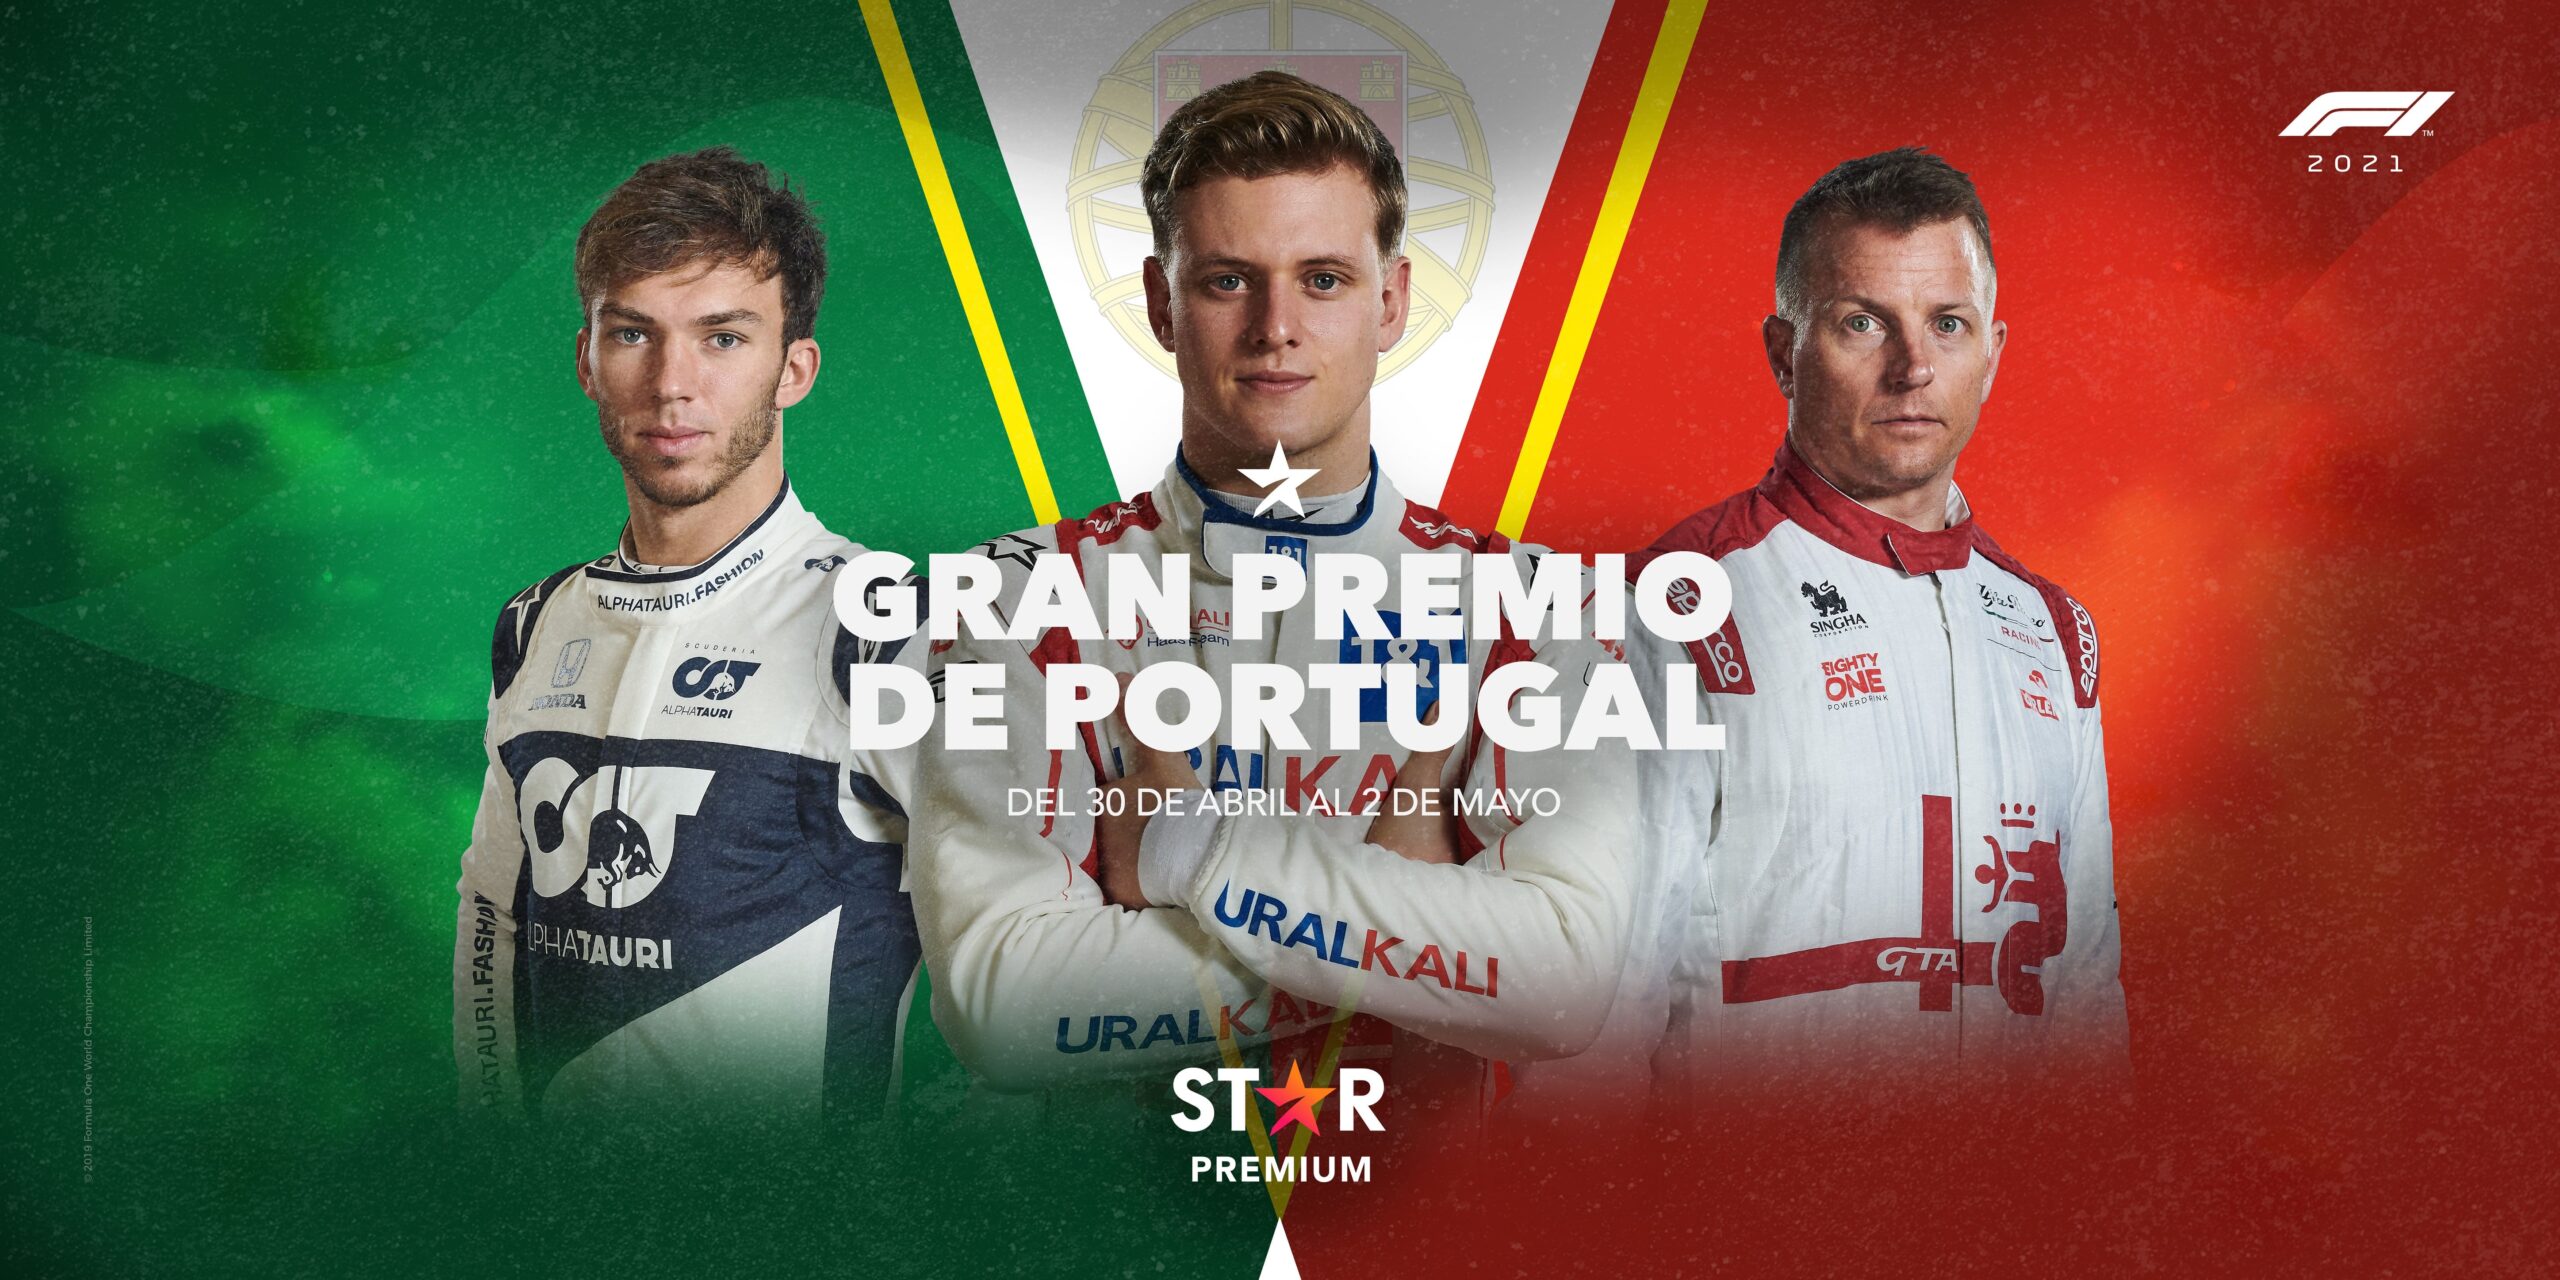 La Fórmula 1 desembarca en Algarve con las máximas figuras del automovilismo, para disputar el Gran Premio de Portugal